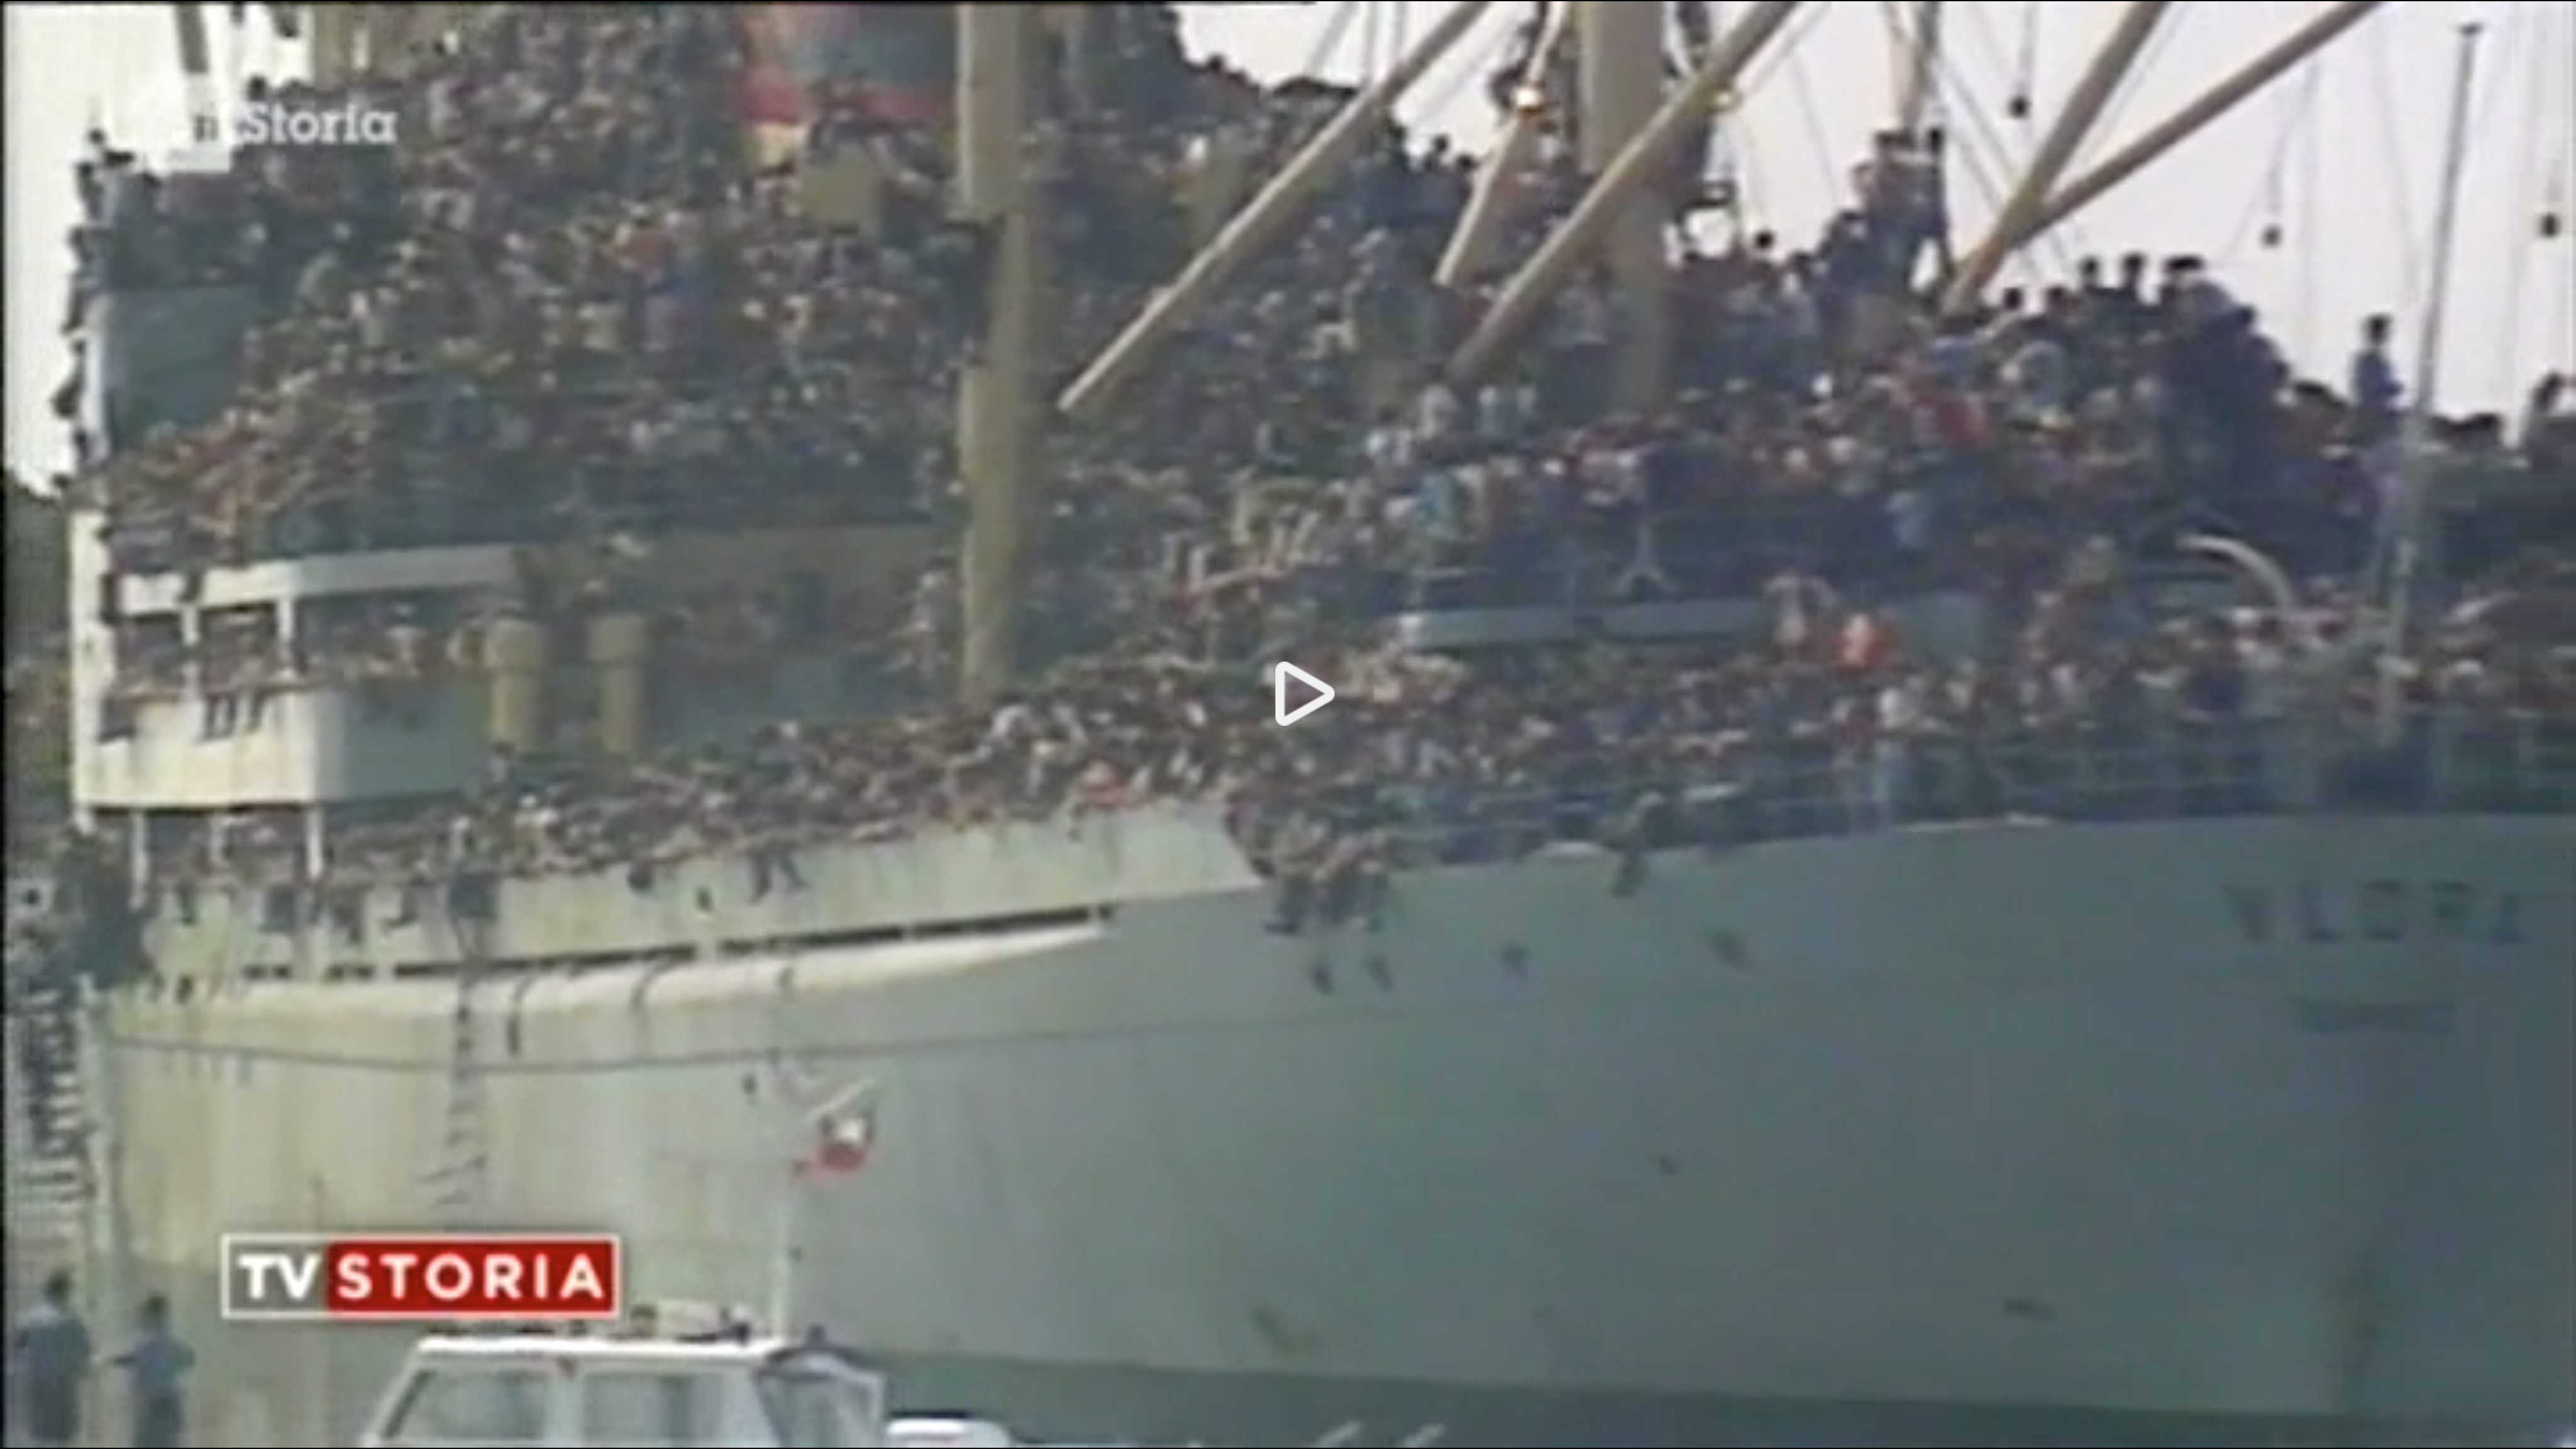 Warning in television: 20.000 Albanians arrive at Bari